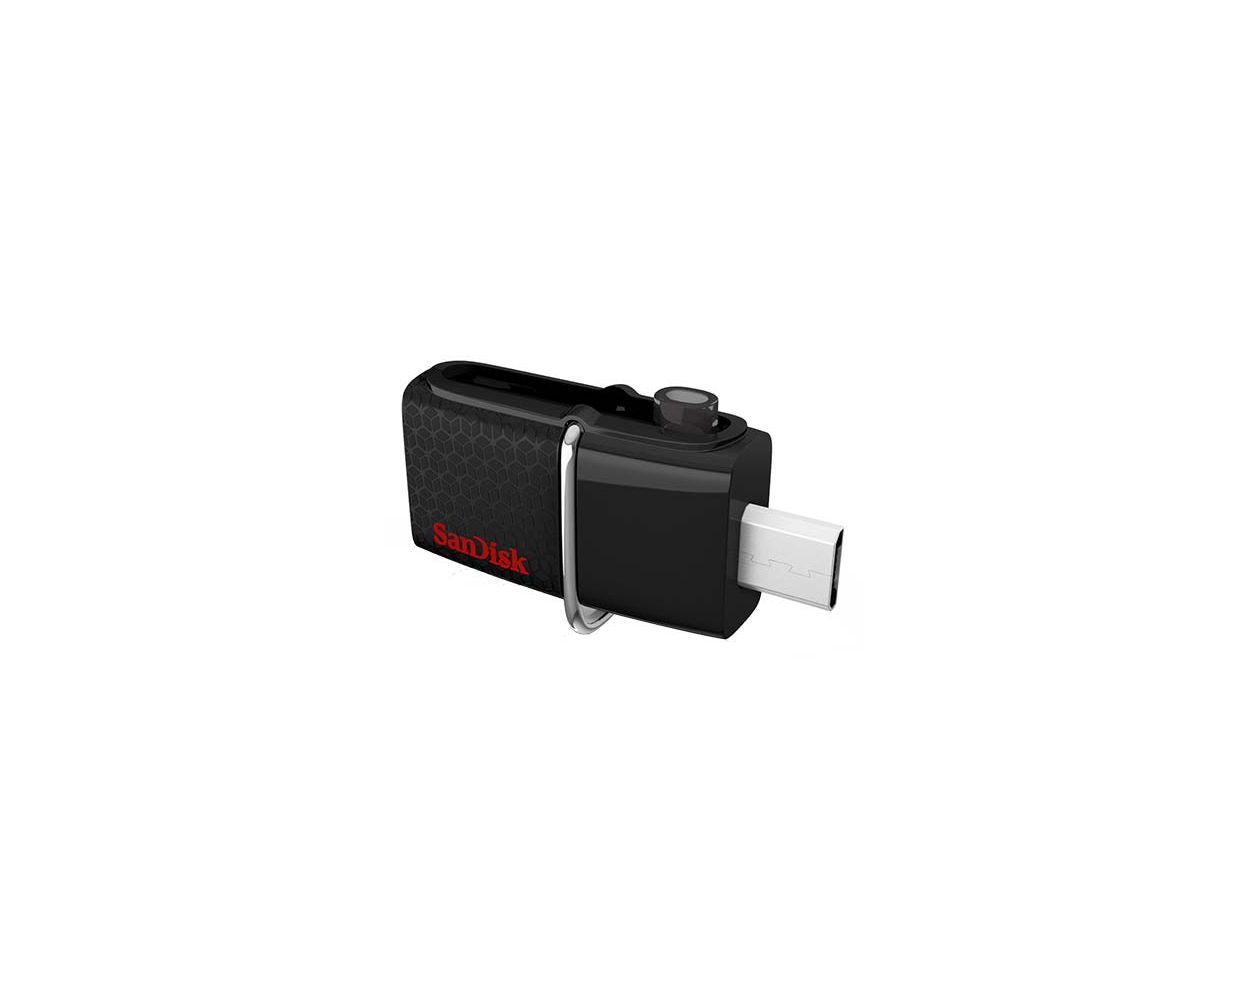 SANDISK 64GB ULTRA DUAL USB DRIVE 3.0